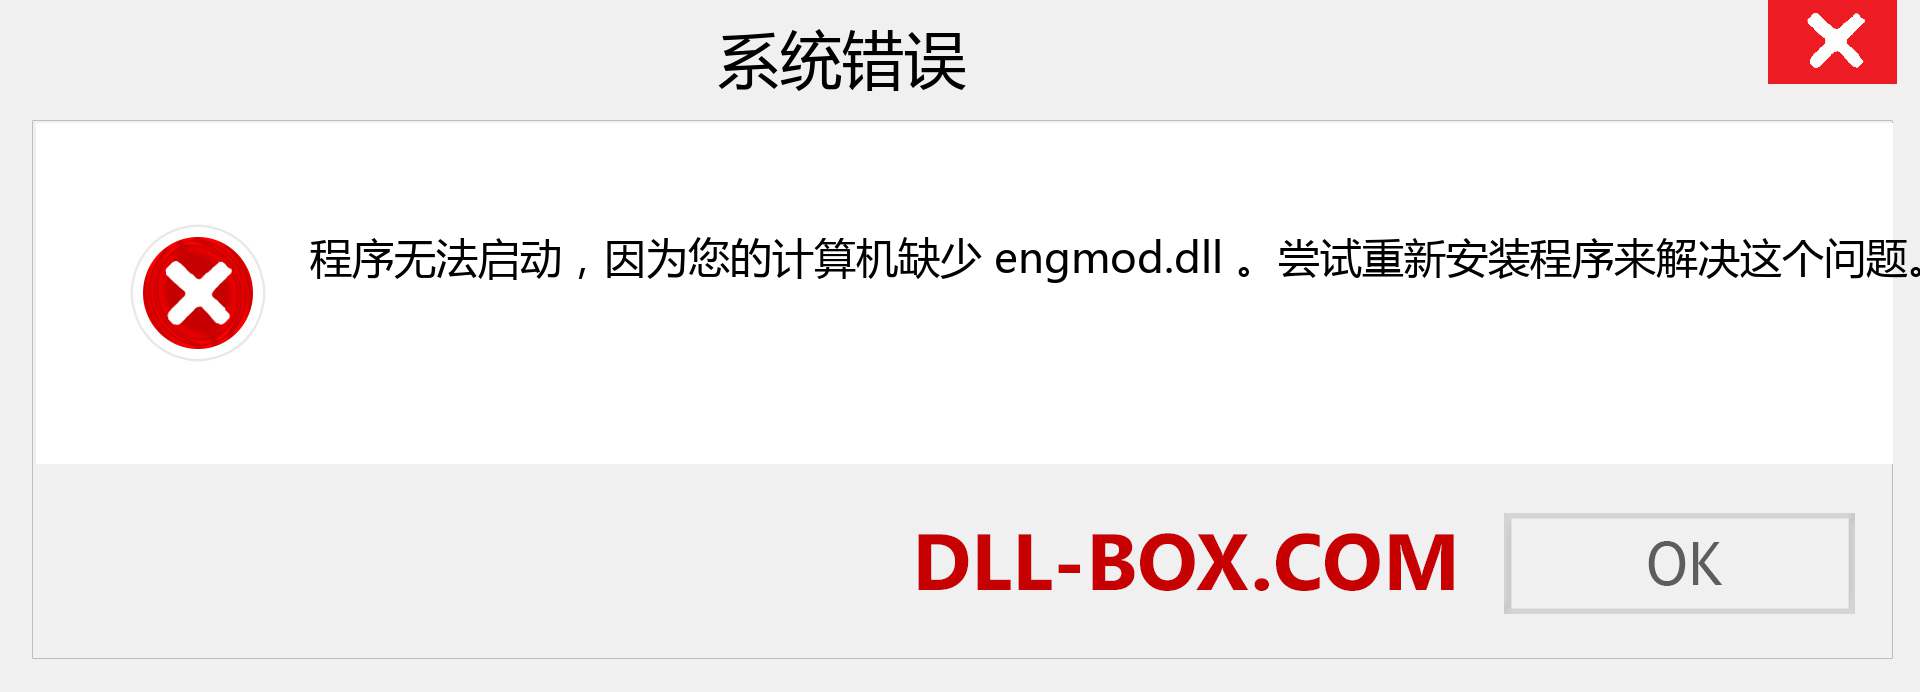 engmod.dll 文件丢失？。 适用于 Windows 7、8、10 的下载 - 修复 Windows、照片、图像上的 engmod dll 丢失错误